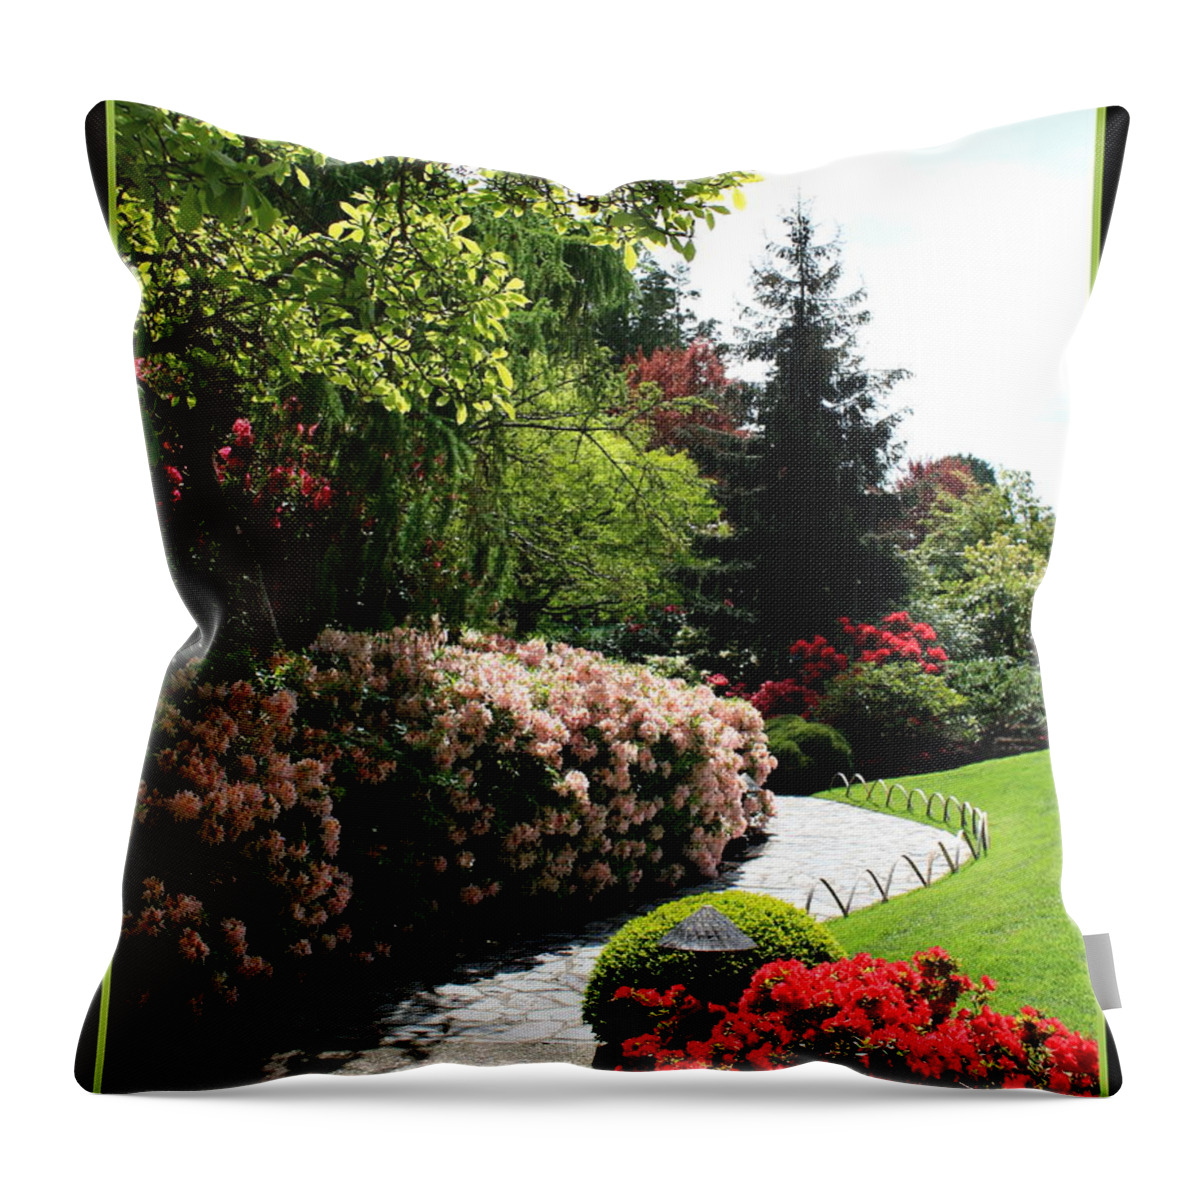 Spring Throw Pillow featuring the photograph Walk through Spring Garden by Carol Groenen